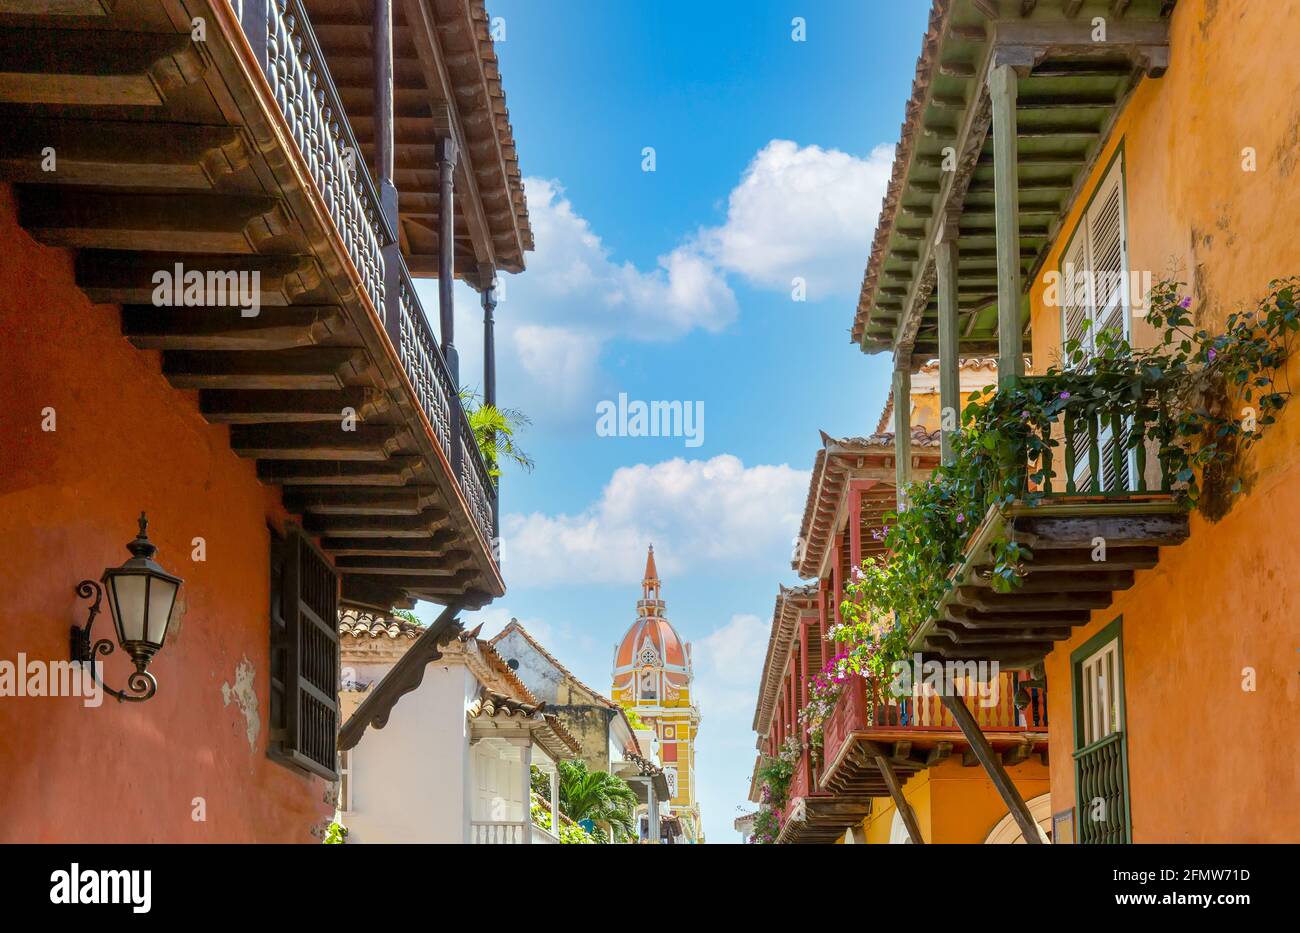 La famosa città coloniale fortificata di Cartagena, Cuidad Amurrallada, e i suoi edifici colorati nel centro storico della città, dichiarato Patrimonio dell'Umanità dall'UNESCO. Foto Stock